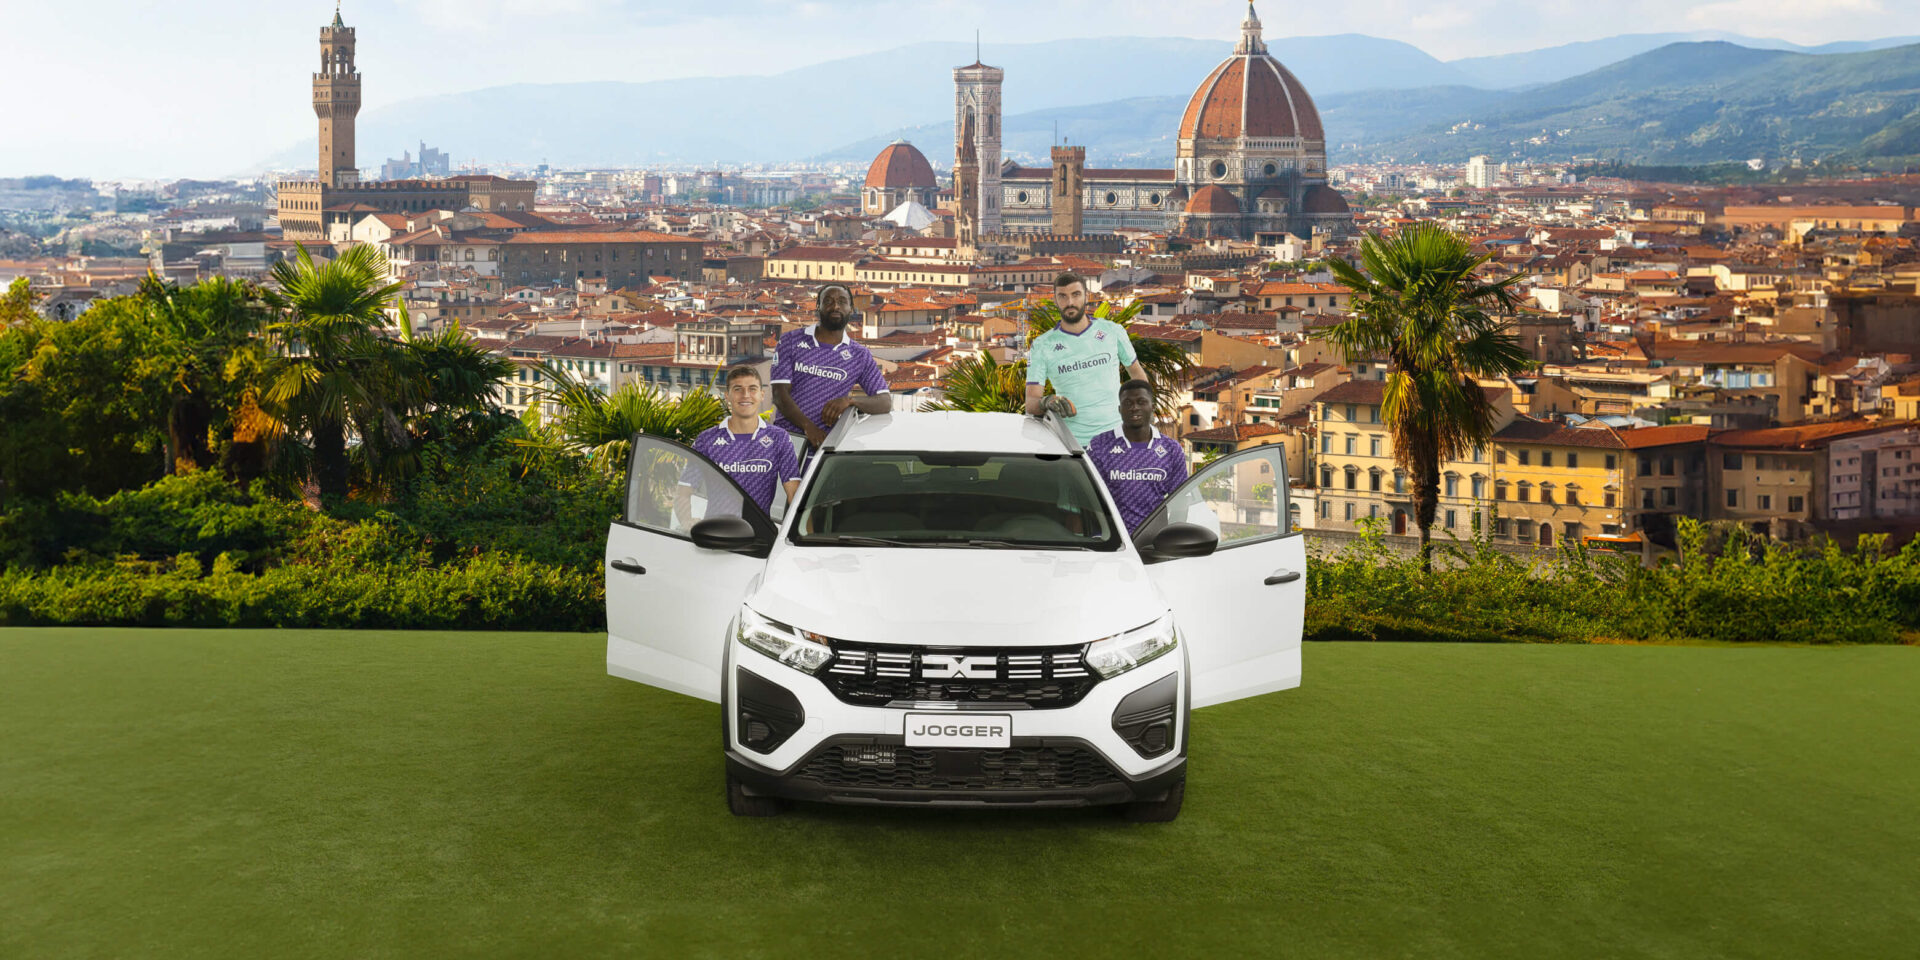 Reels Strategy e Shooting per Nuova Comauto Spa, Automotive partner di Fiorentina